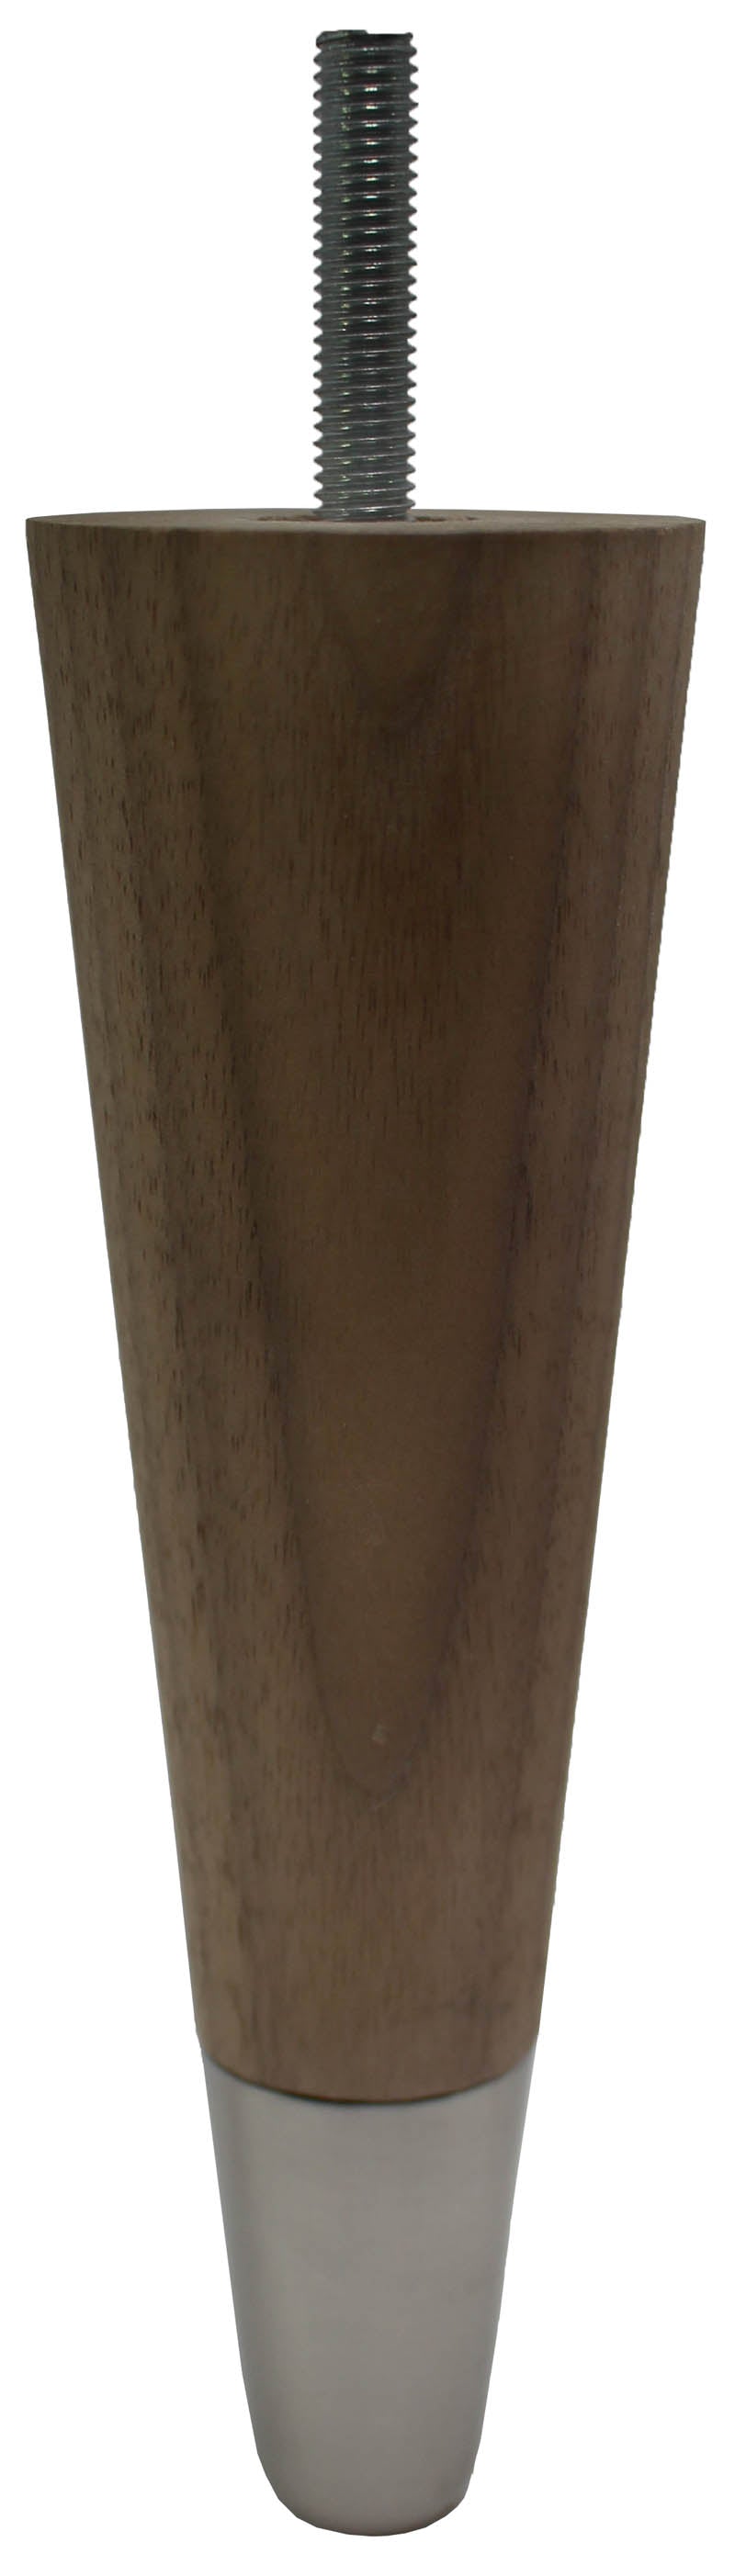 Agata Solid Walnut Tapered Furniture Legs